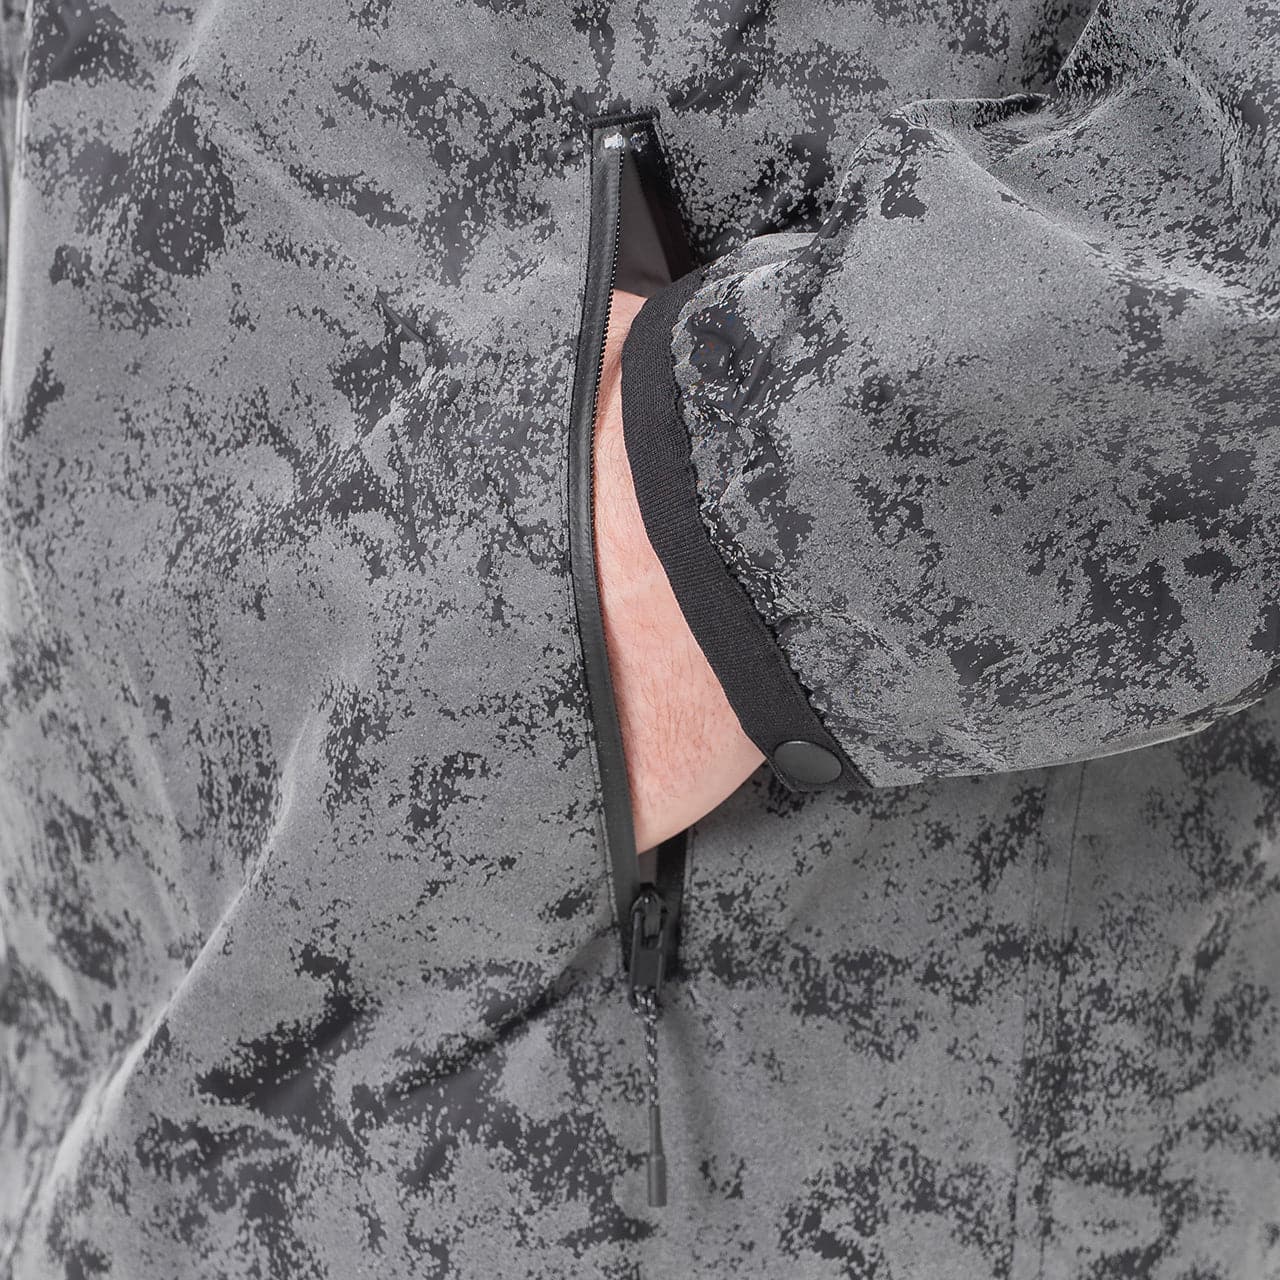 adidas Y-3 CH1 Distressed Reflective Jacket (Grau / Schwarz)  - Allike Store